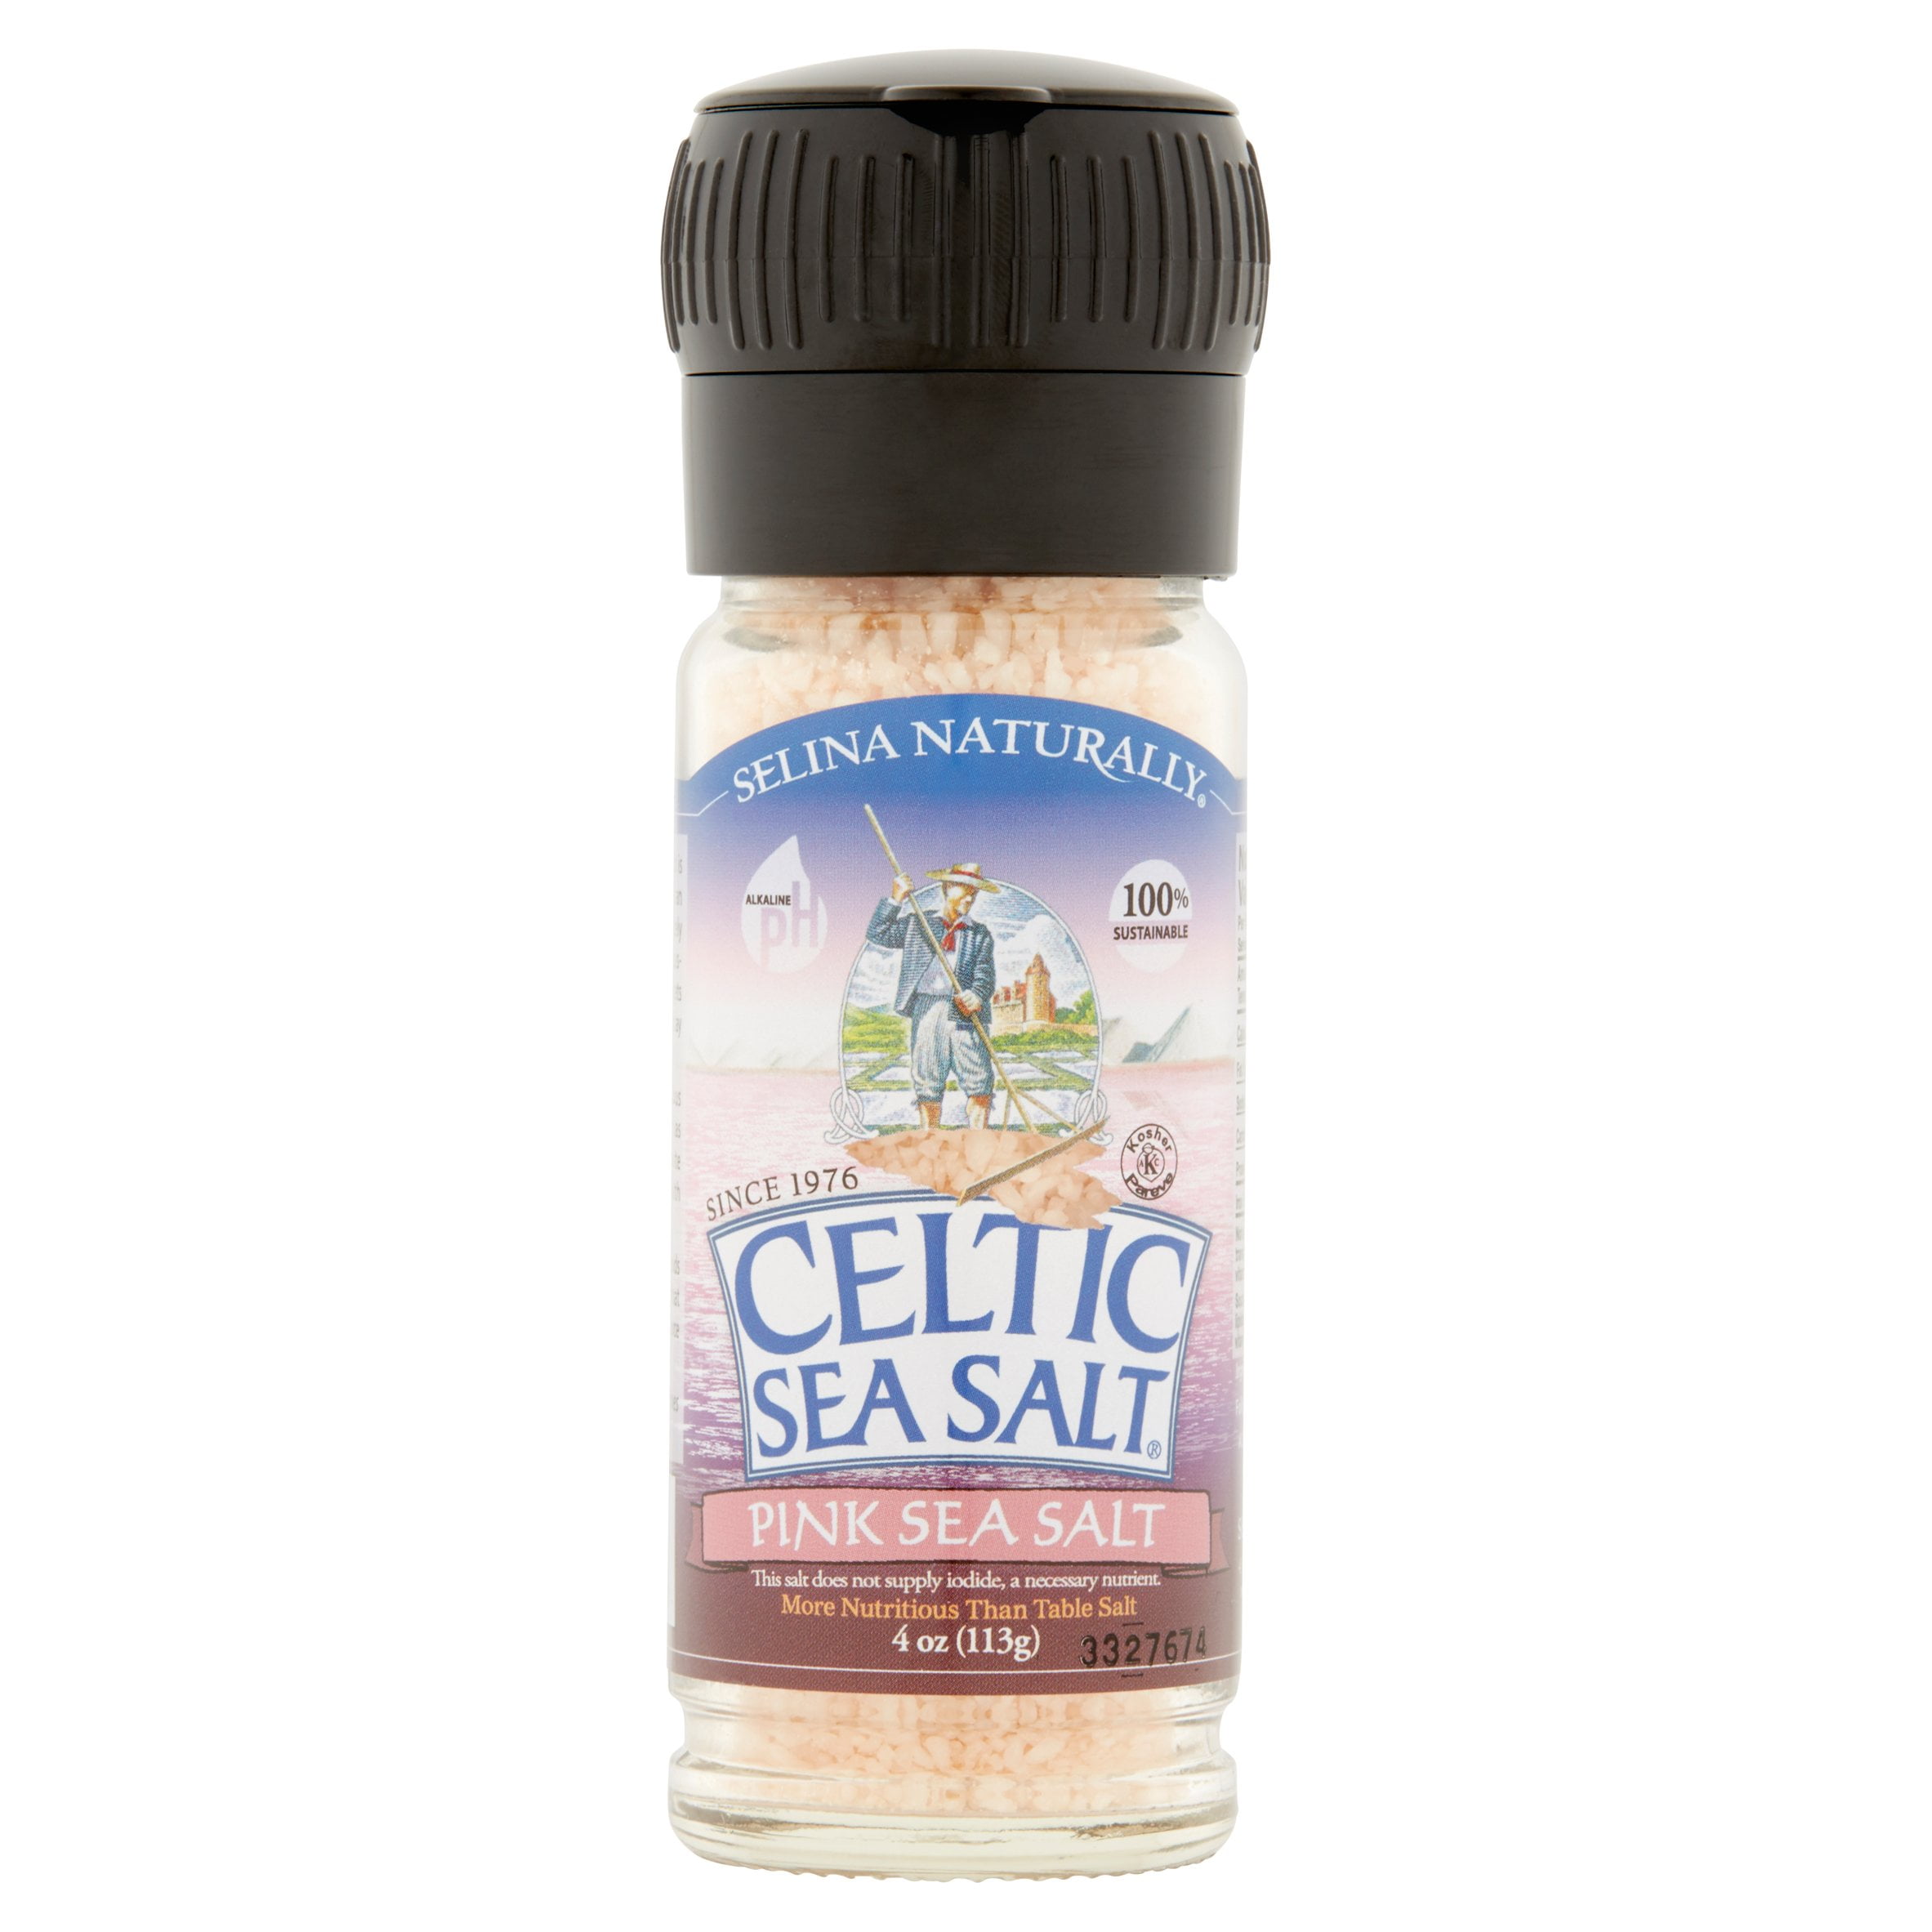 Selina Naturally Assaisonné de sel de la mer Celtique 3.7 Oz